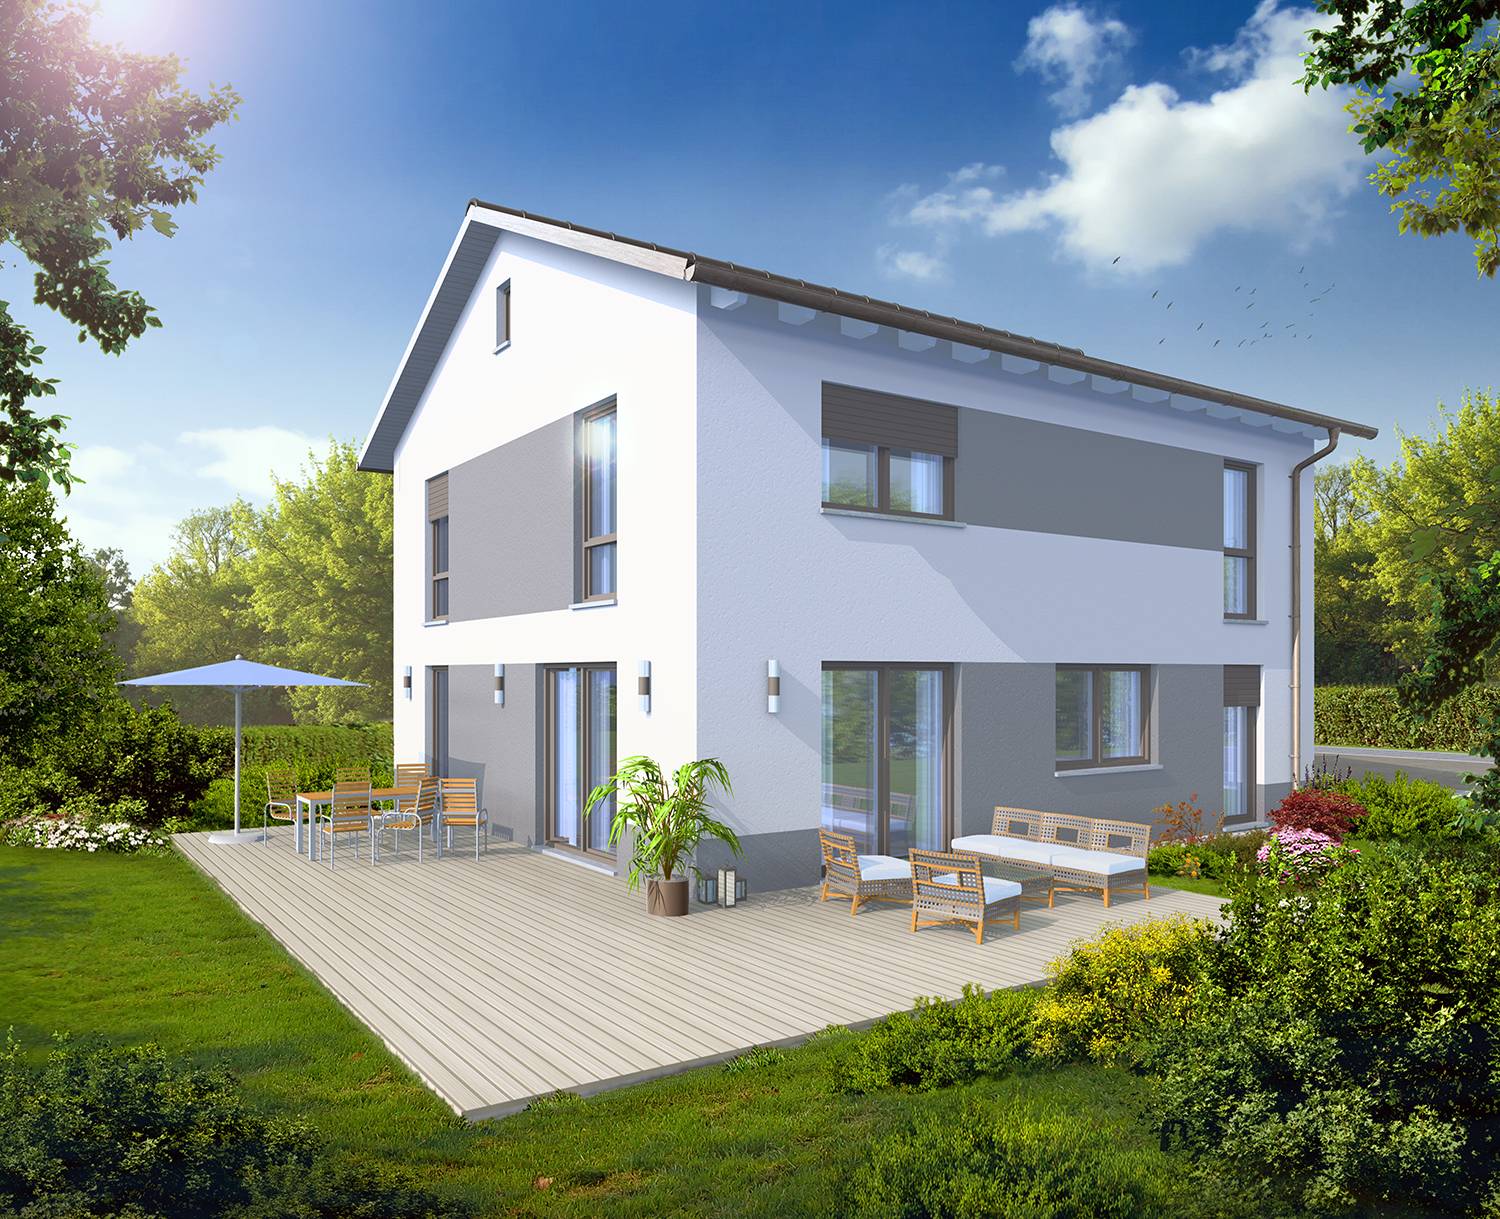 Architekturvisualisierung der Gartenseite mit Terrasse des Bauvorhabens eines Einfamilienhauses visualisiert für die Firma R+S Immobilien GmbH aus Oberasbach/Bayern (Jahr 2022)